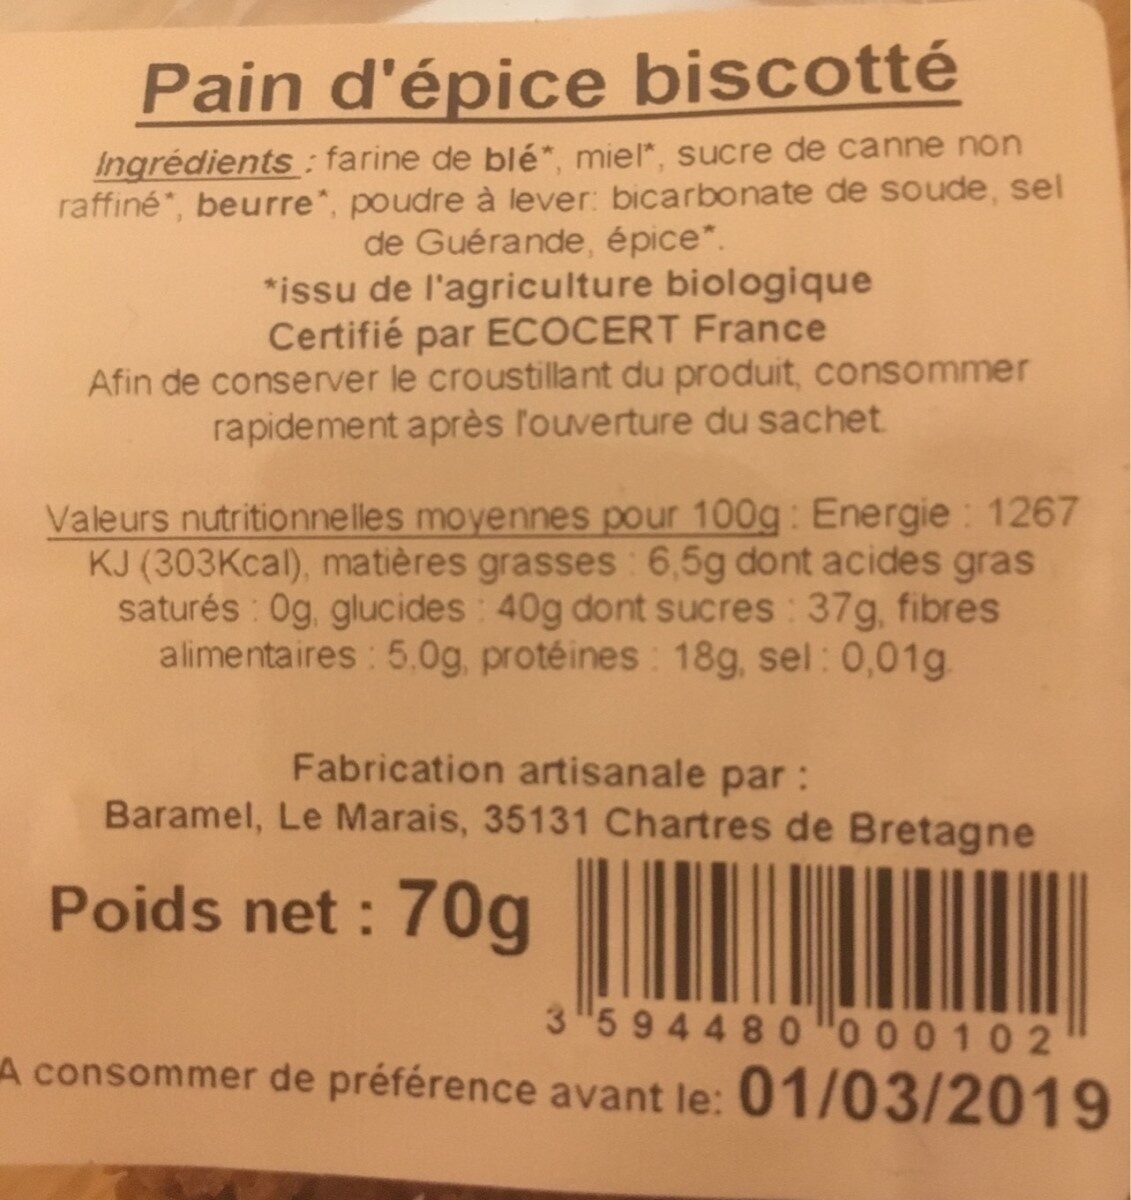 Pain d'épice biscotté - Tableau nutritionnel